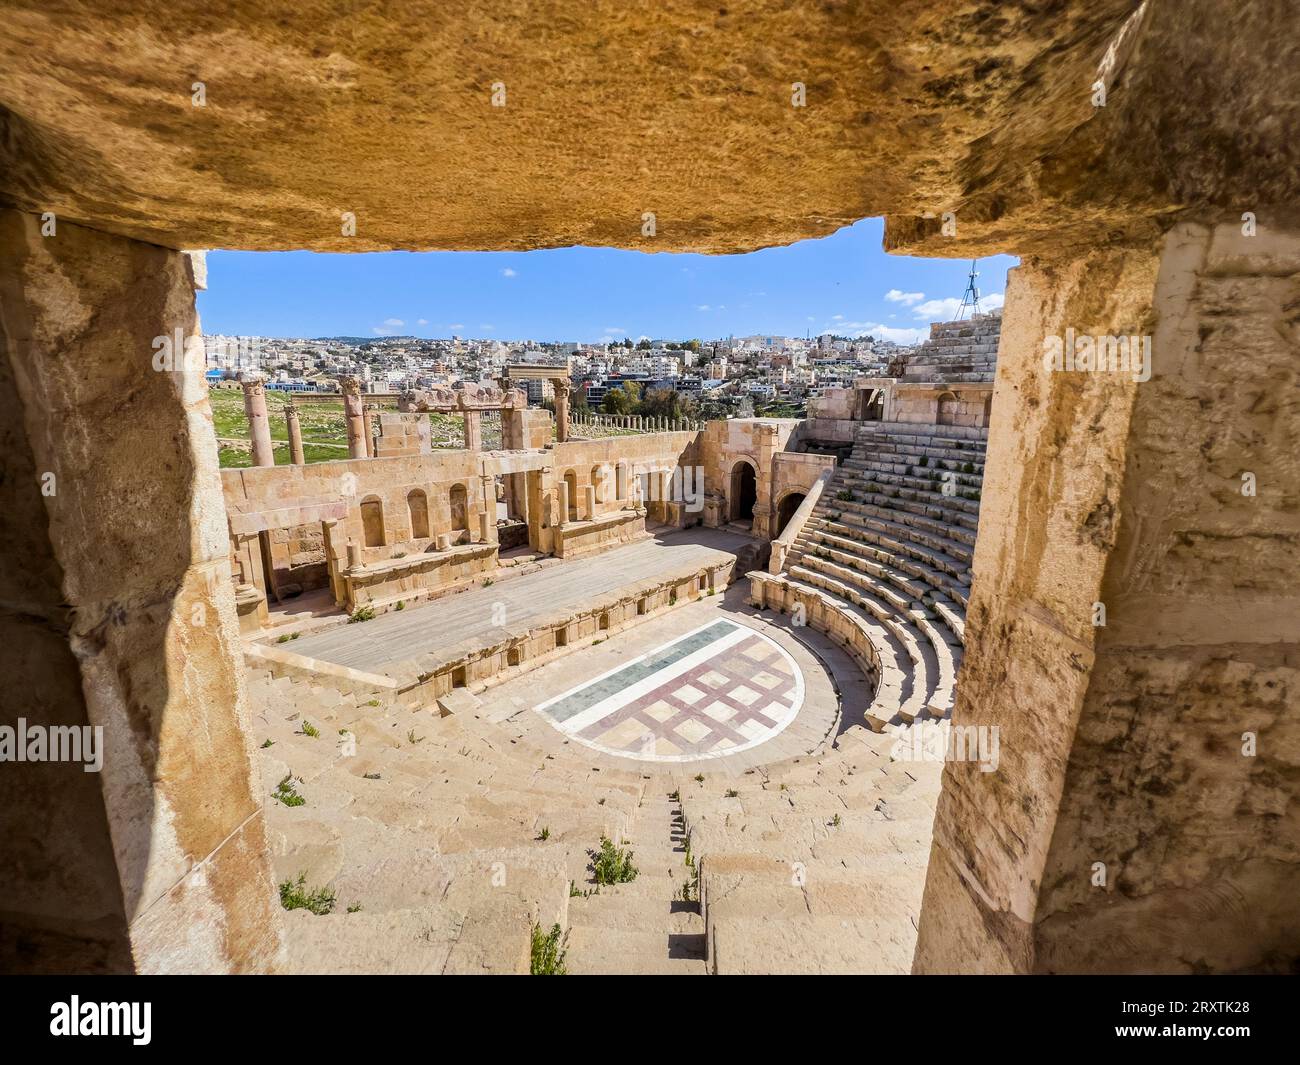 Das große North Theater in der antiken Stadt Jerash, vermutlich 331 v. Chr. von Alexander dem Großen gegründet, Jerash, Jordanien, Naher Osten Stockfoto